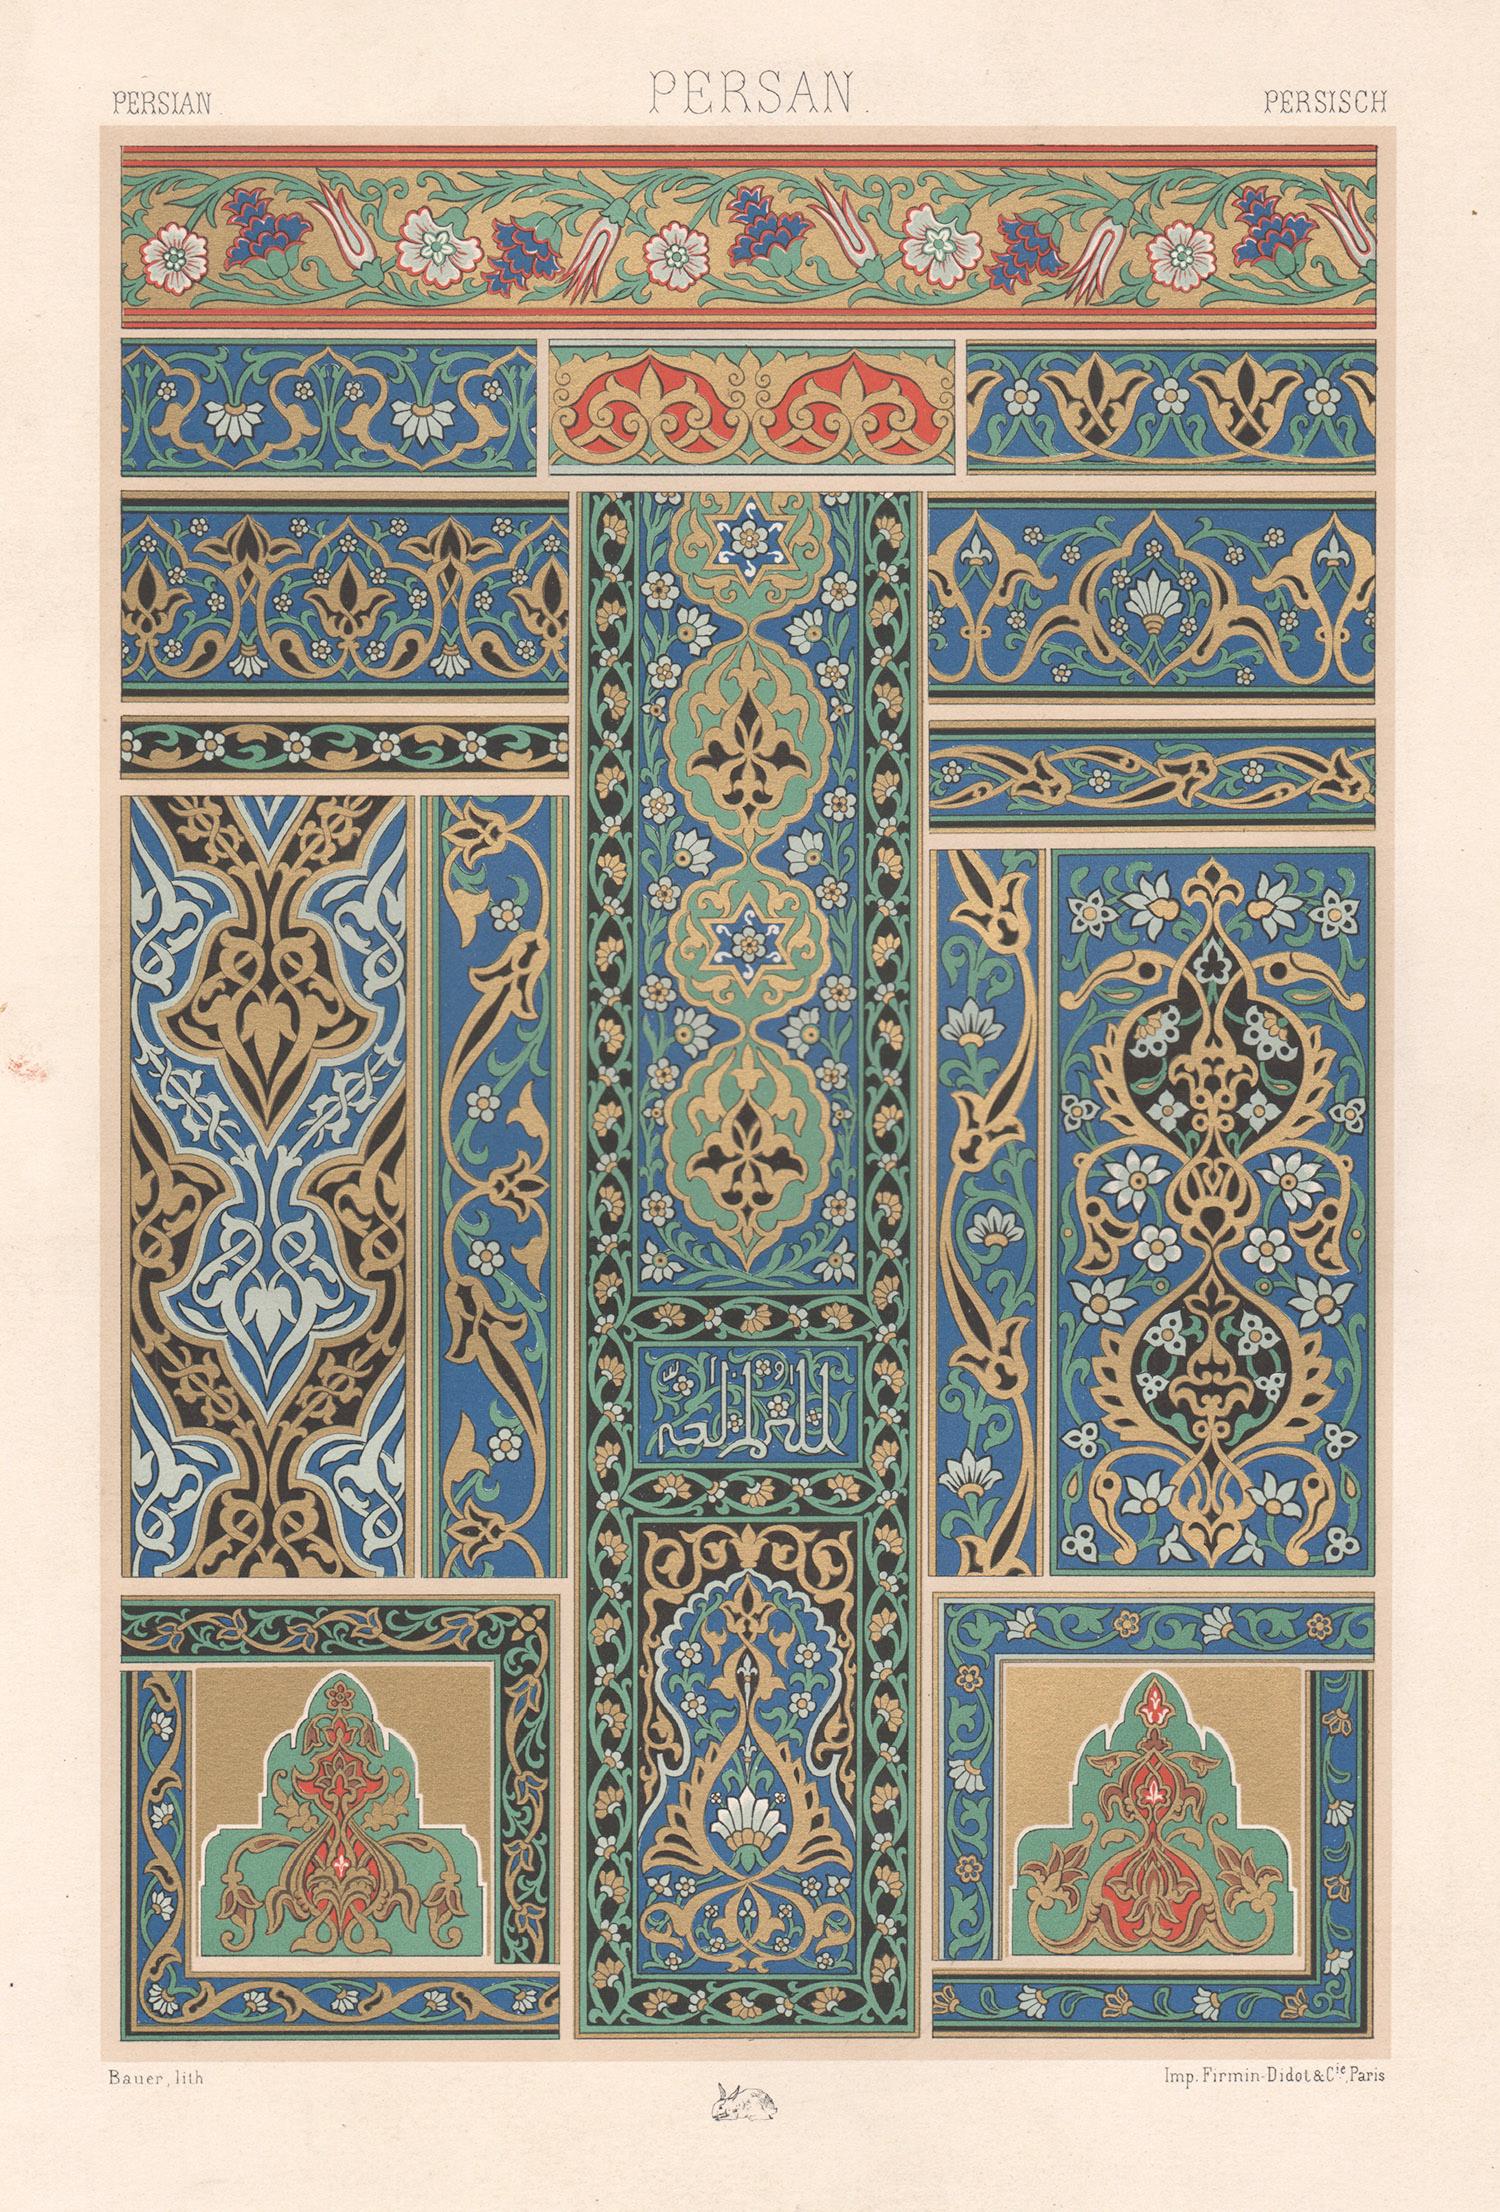 Albert-Charles-Auguste Racinet Abstract Print – Persischer, französischer, antiker Racinet-Kunstdesign-Lithographiendruck aus dem 19. Jahrhundert